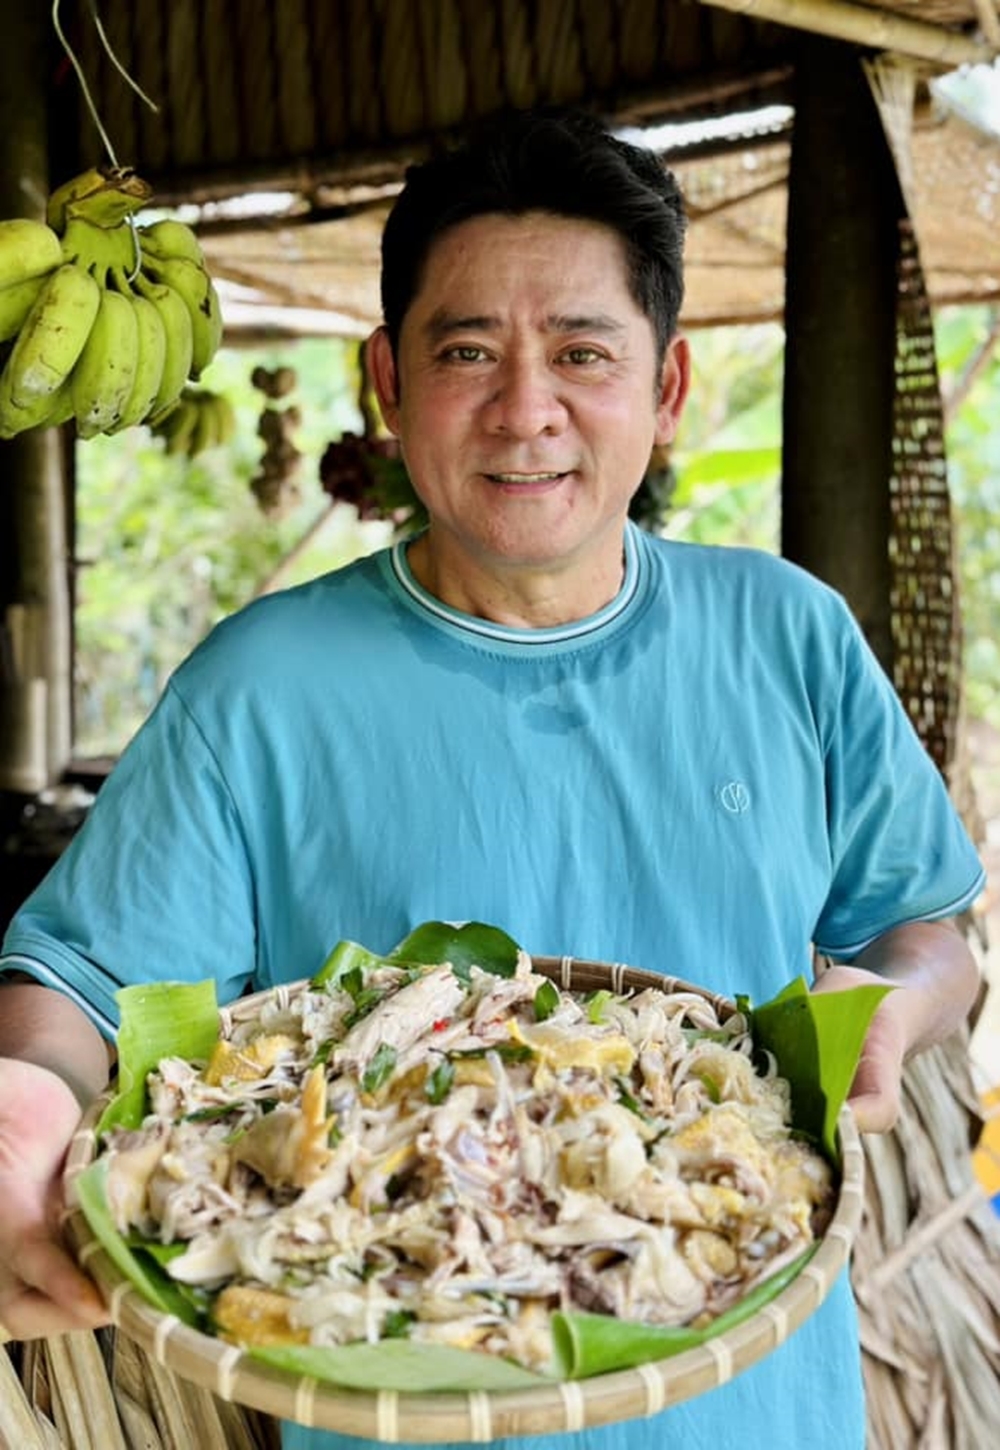 Tài tử màn ảnh Việt một thời: Ở nhà vườn 6.000 m2, tự nấu ăn, quay TikTok, cuộc sống ngập tiếng cười - Ảnh 3.